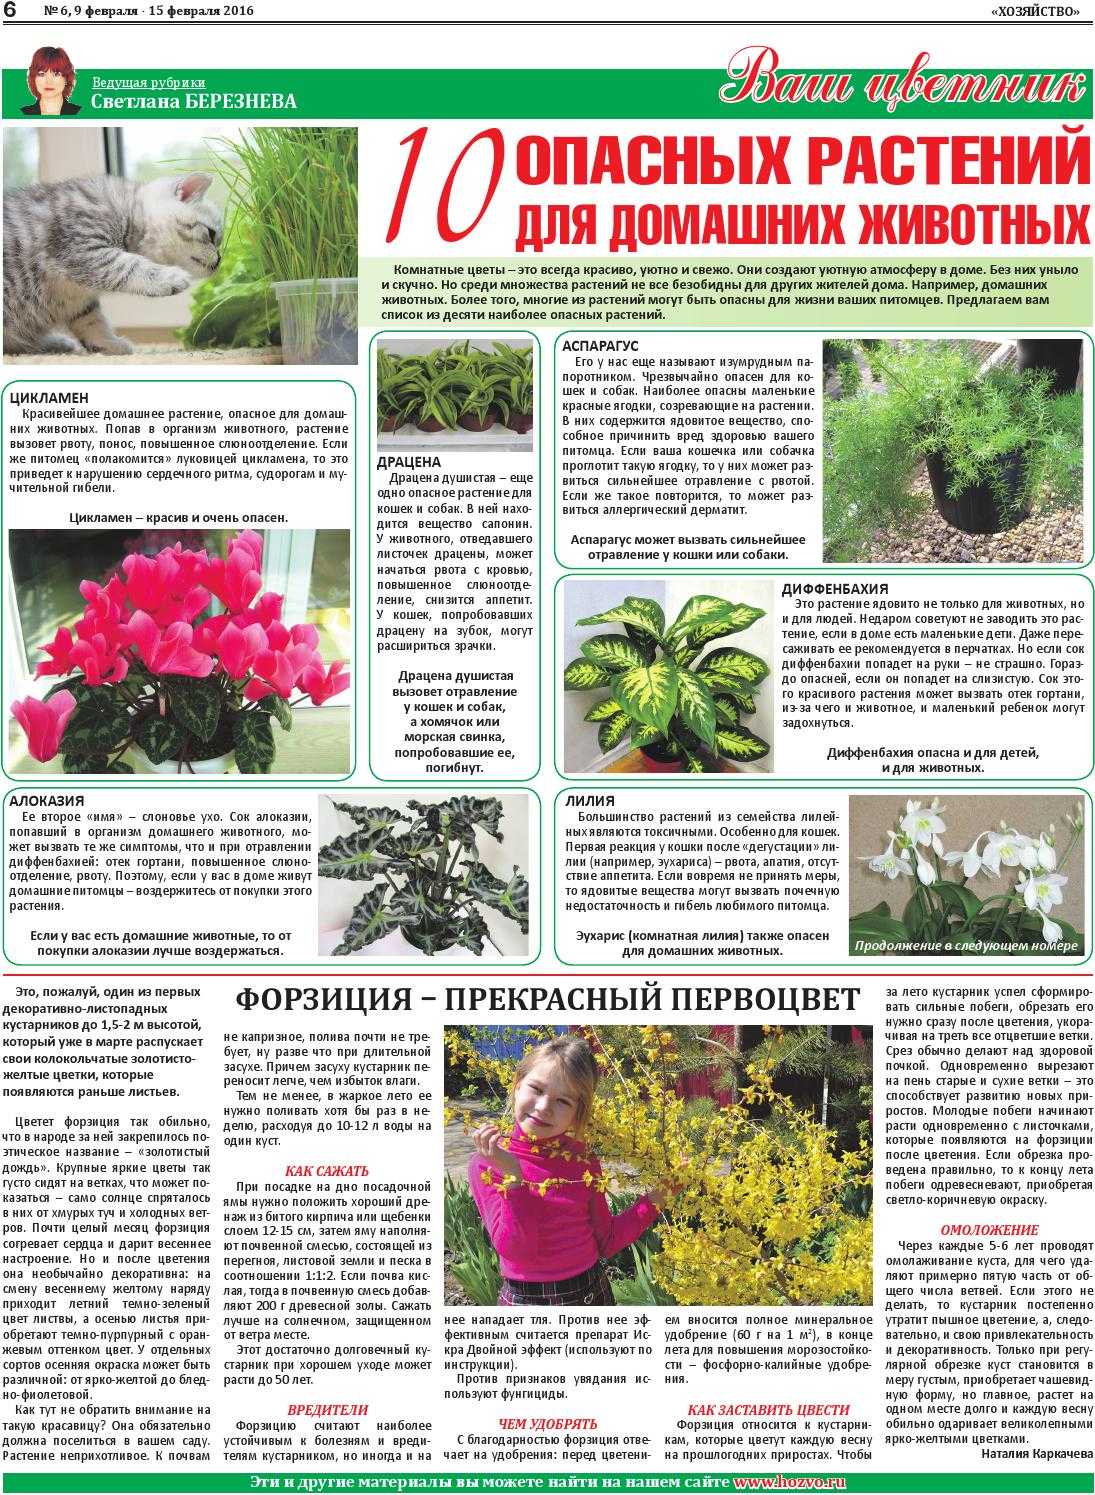 Список из 50 вредных растений и цветов для кошек, которые не следует давать им на зуб Что делать если кошка уже съела ядовитое растение